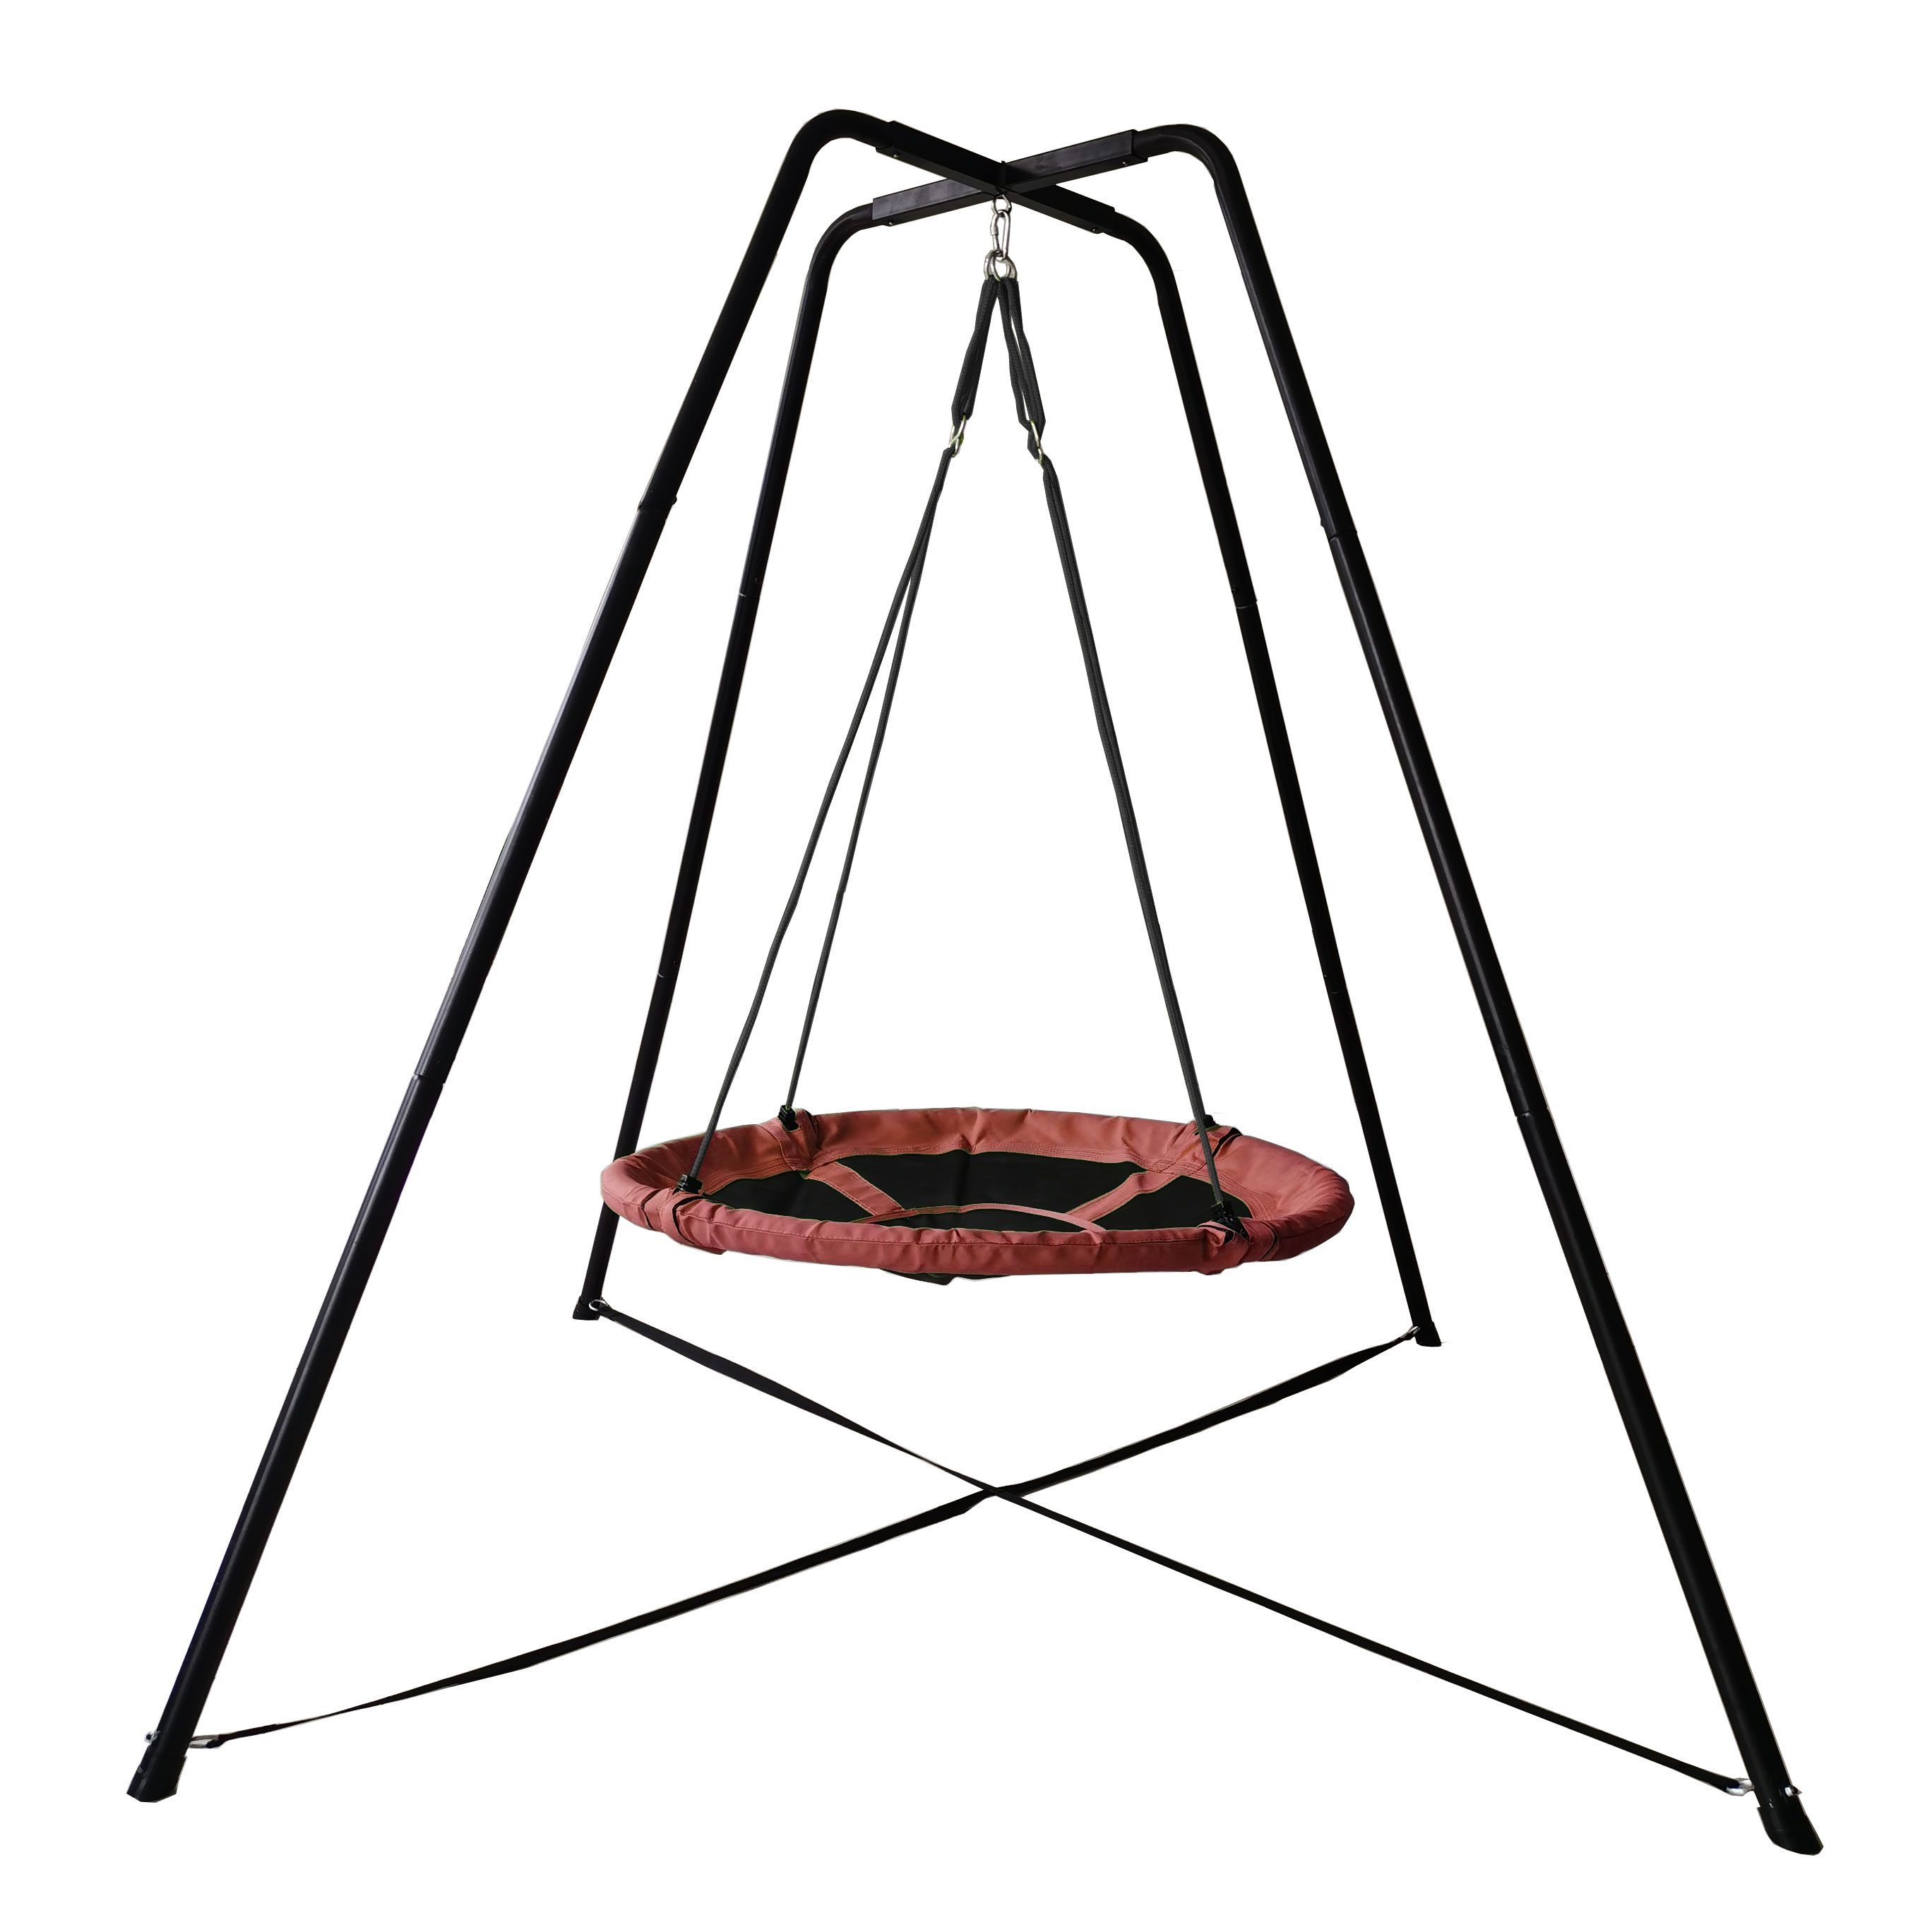 Swing -Set für Hinterhofsaucer Swing -Sitz mit Hochleistungsrahmen -Metall -Swing -Ständer